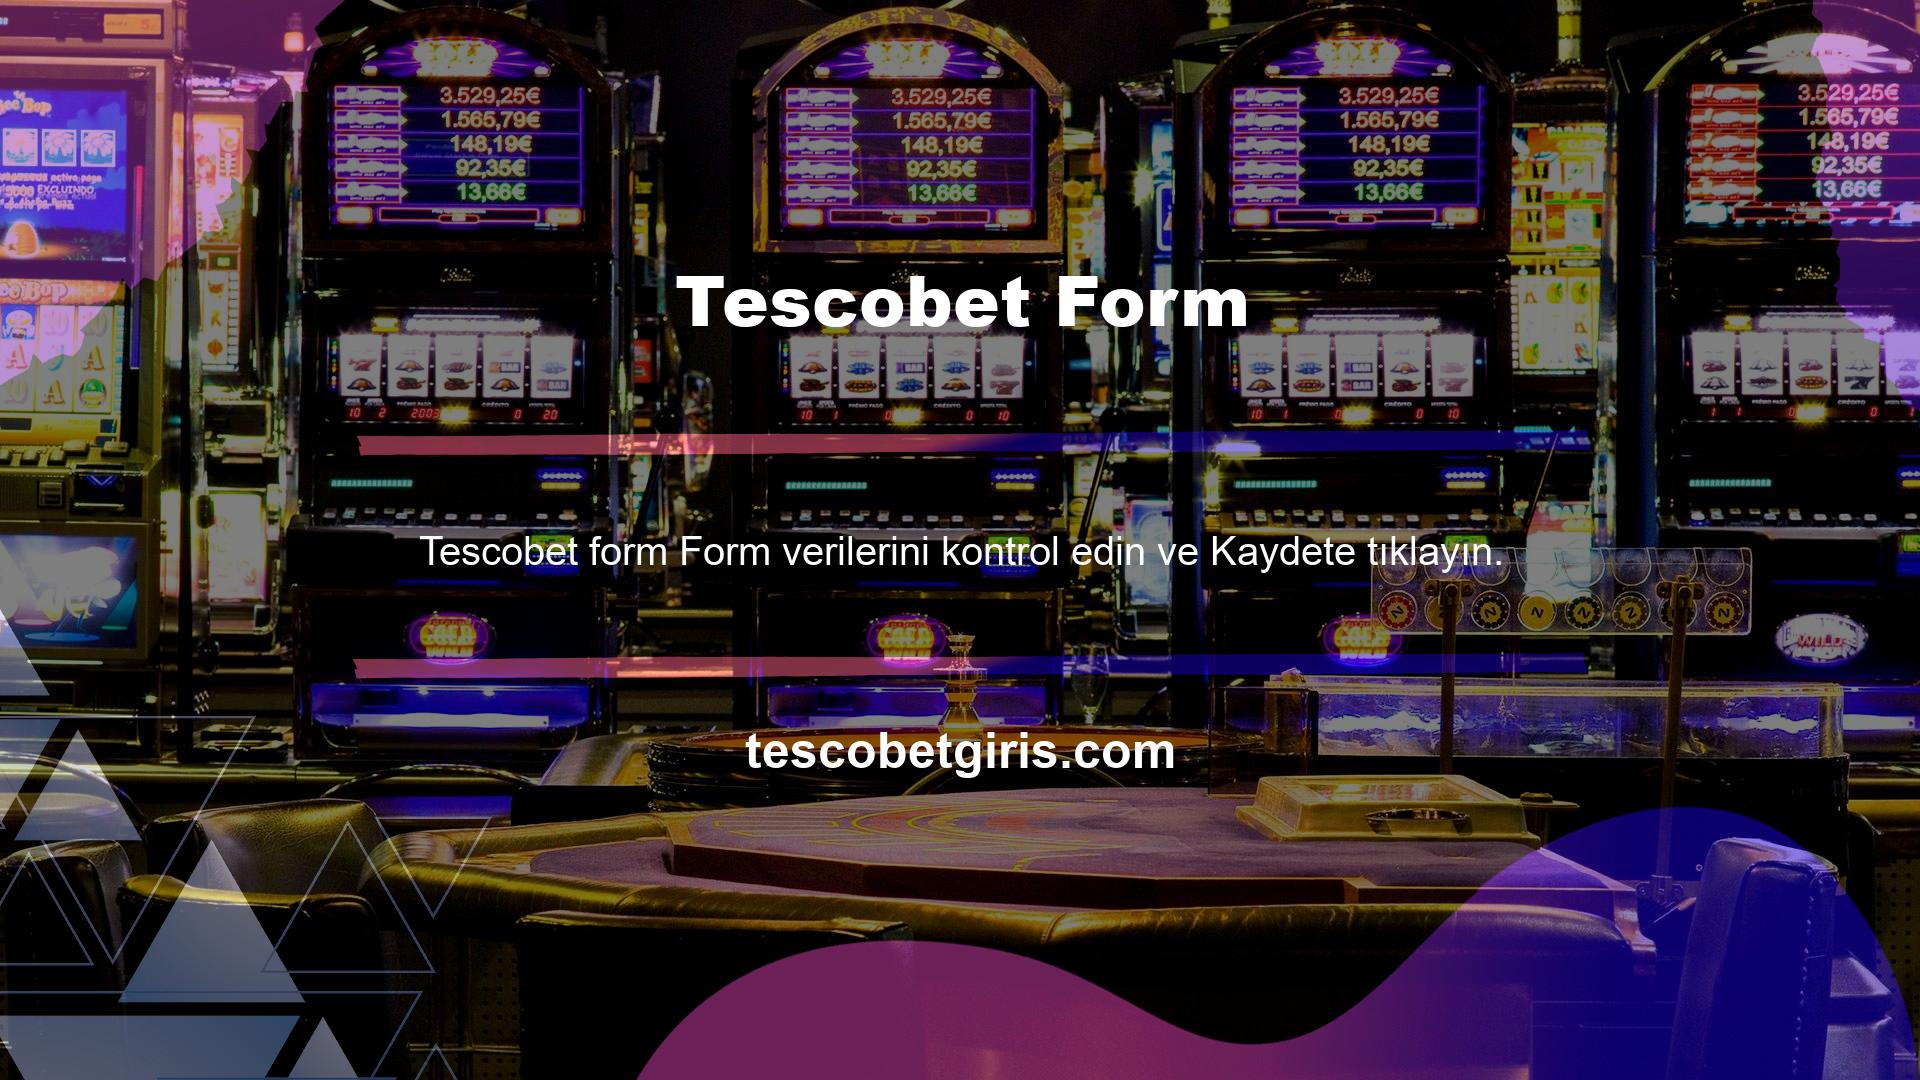 Bu basit program, kullanıcıların Tescobet kayıt işlemini tamamlamasını sağlar